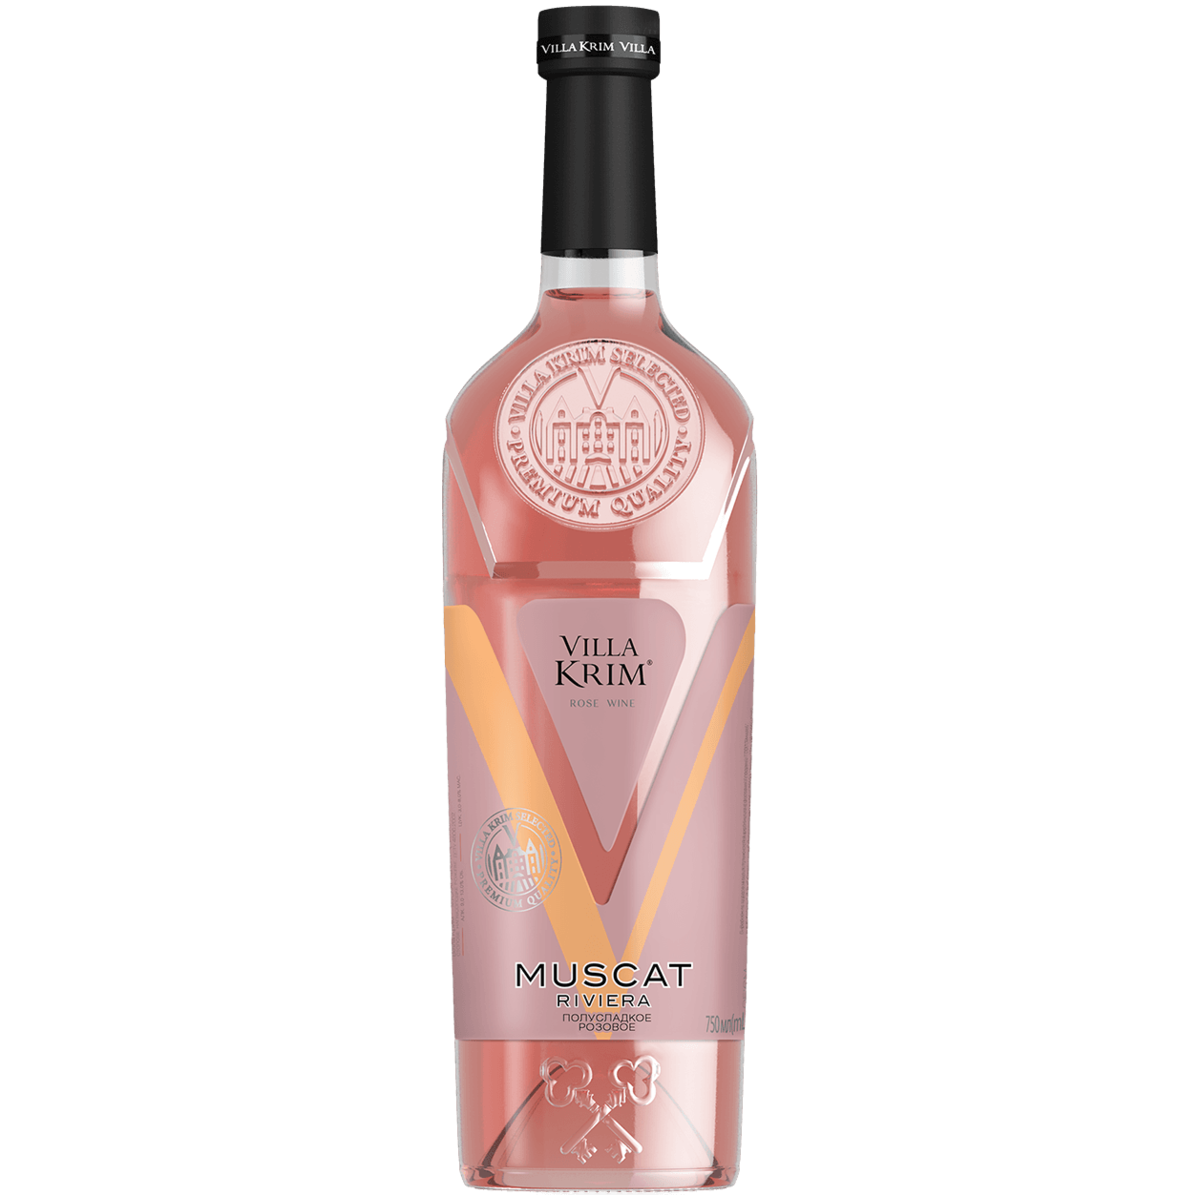 Вино Villa krim "Muscat Riviera" Rose Wine. Вилла Крым Мускат розовый. Вино Villa krim Muscat Riviera 0.75 л. Вино вилла Крым Мускат. Мускат розовое полусладкое